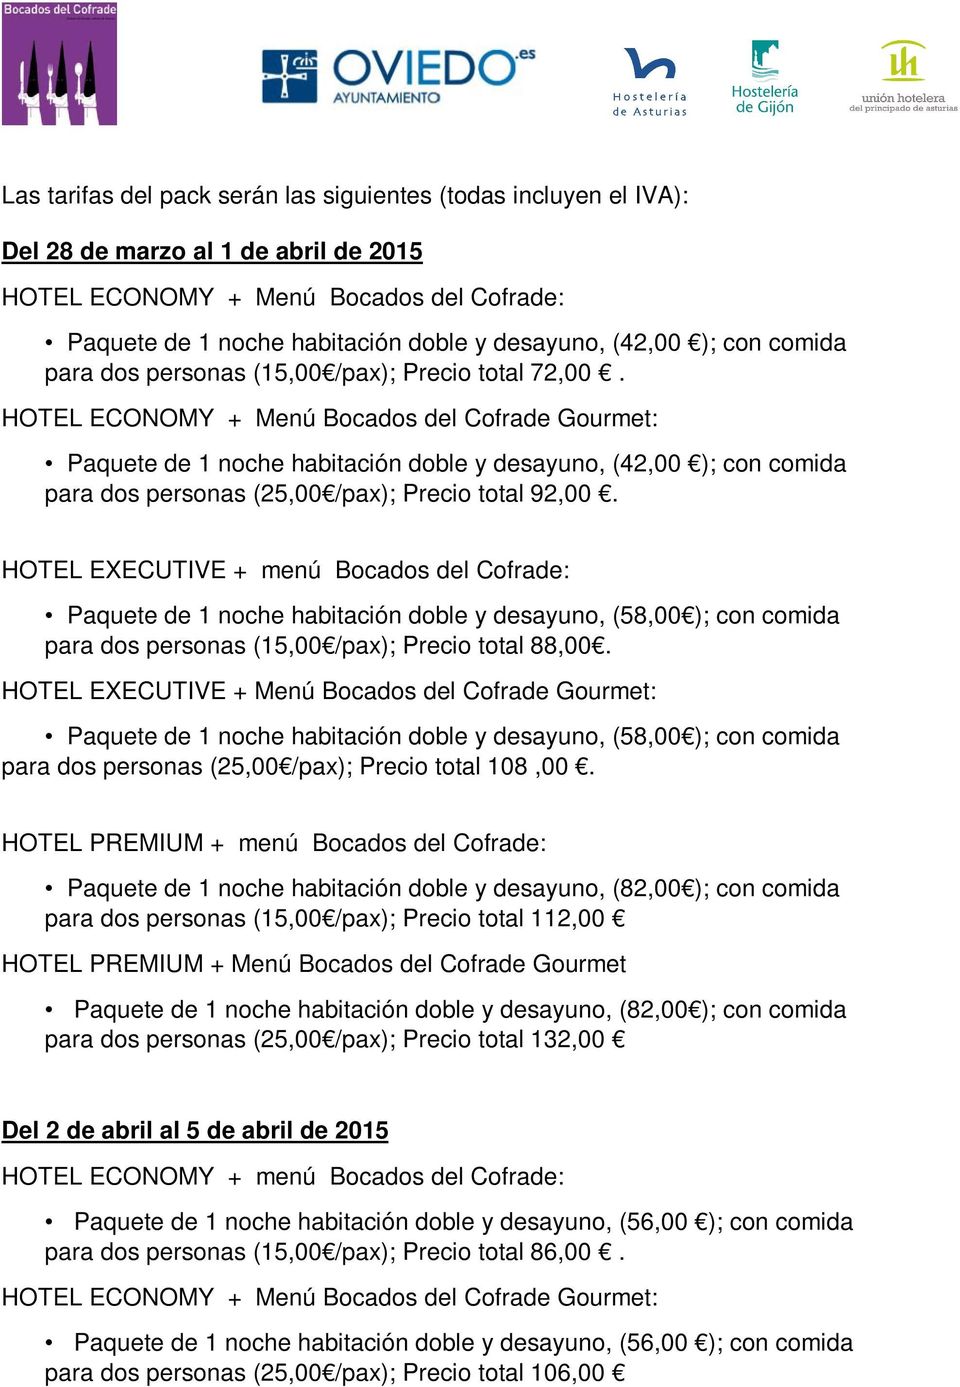 HOTEL ECONOMY + Menú Bocados del Cofrade Gourmet: Paquete de 1 noche habitación doble y desayuno, (42,00 ); con comida para dos personas (25,00 /pax); Precio total 92,00.